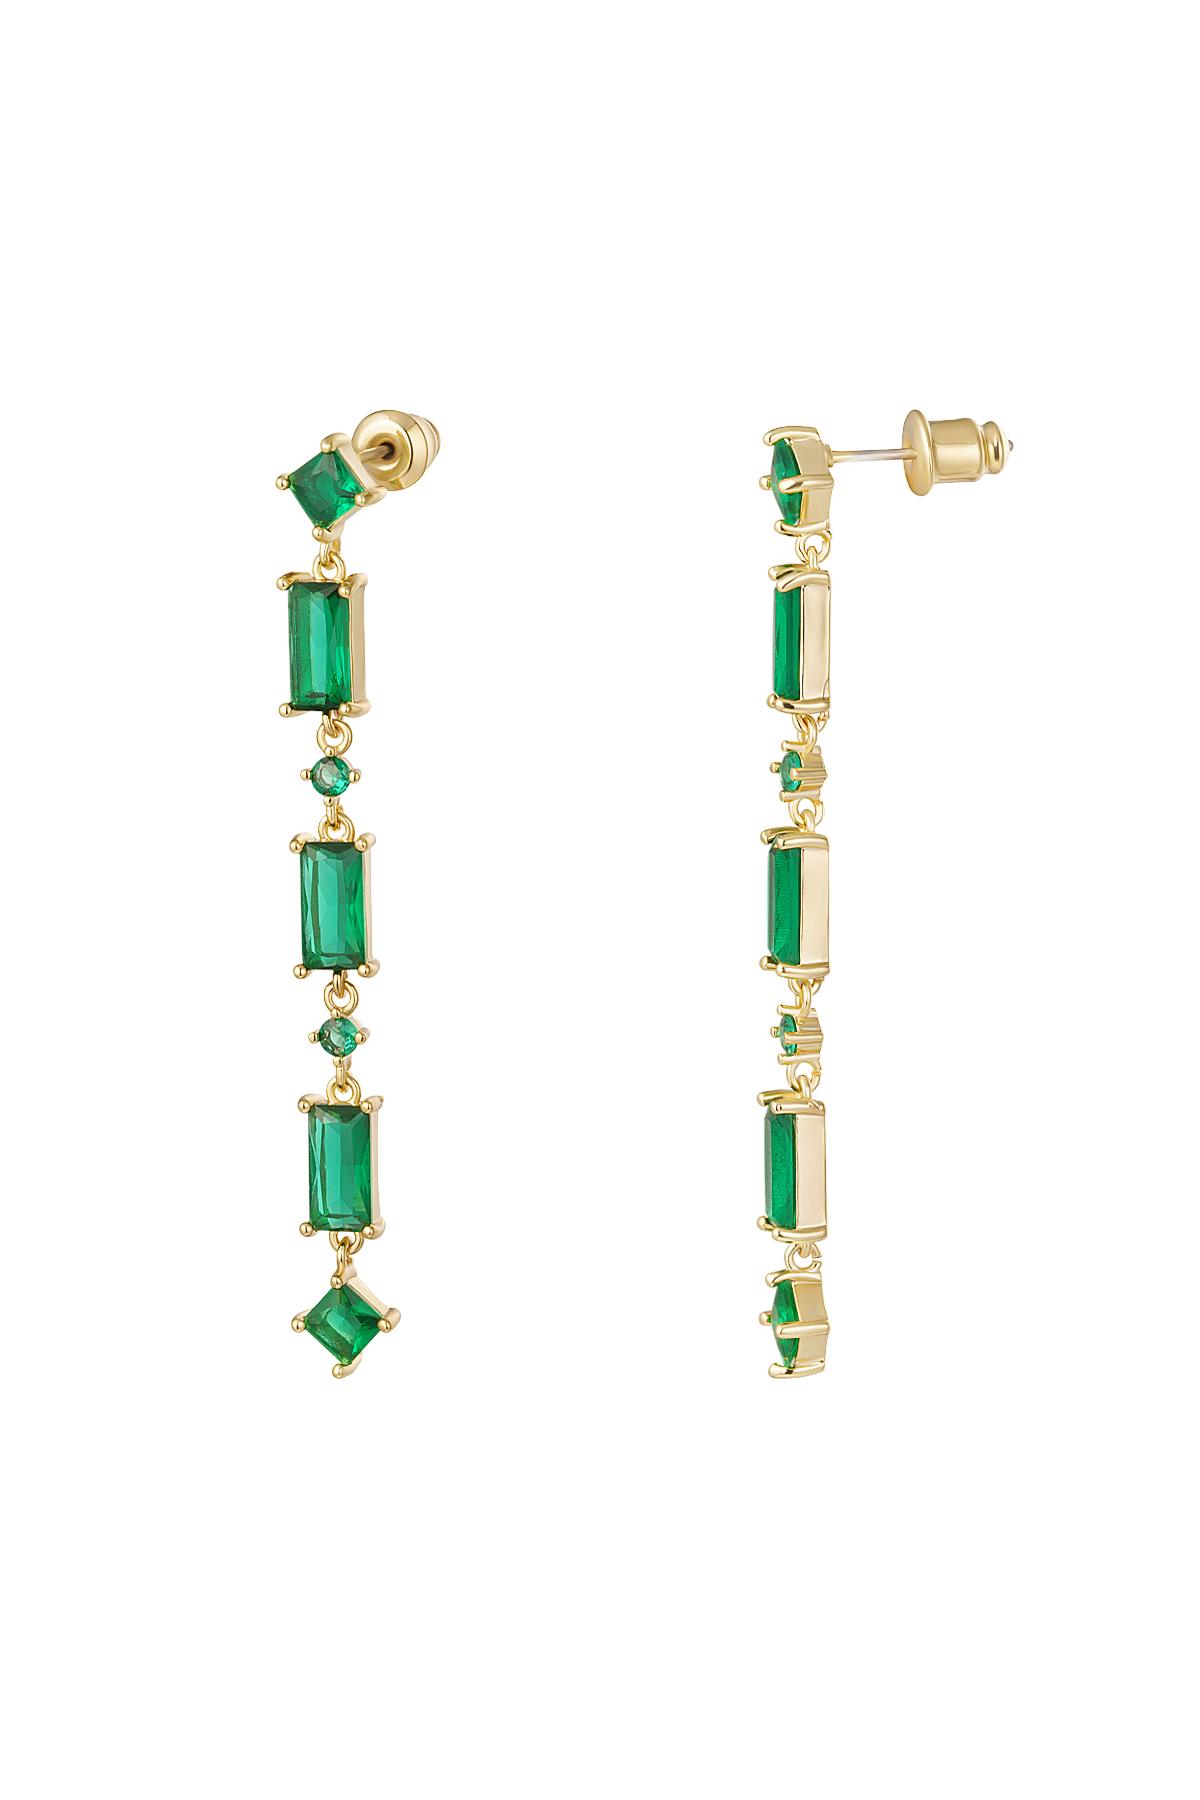 Ohrringe mit farbigen Steinen - Kollektion Sparkle Grün Kupfer h5 